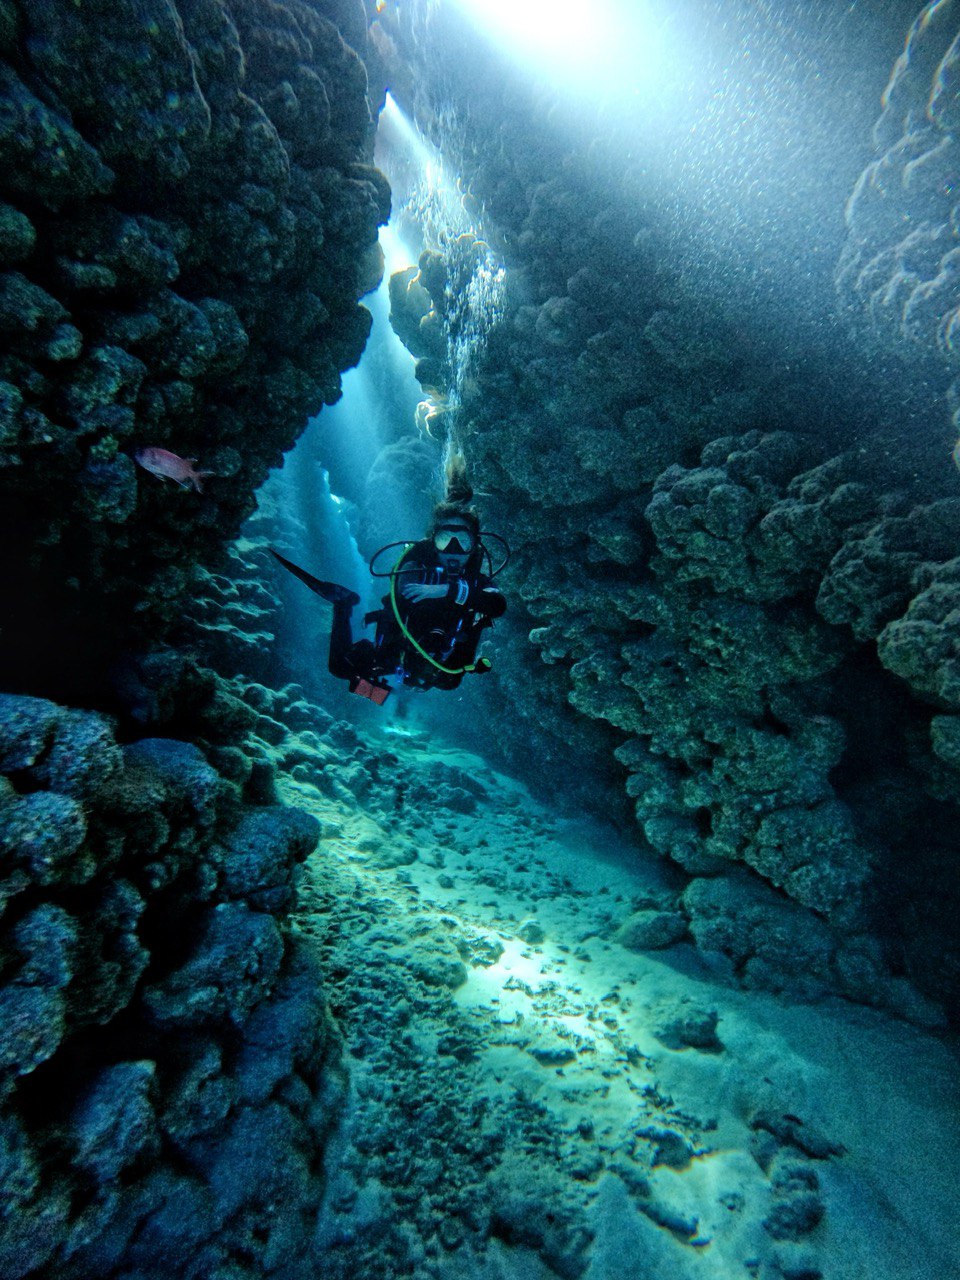 Tauchen Sie tief in Ihre Leidenschaften ein: Entdecken Sie Karrieren in der Unterwasserfotografie